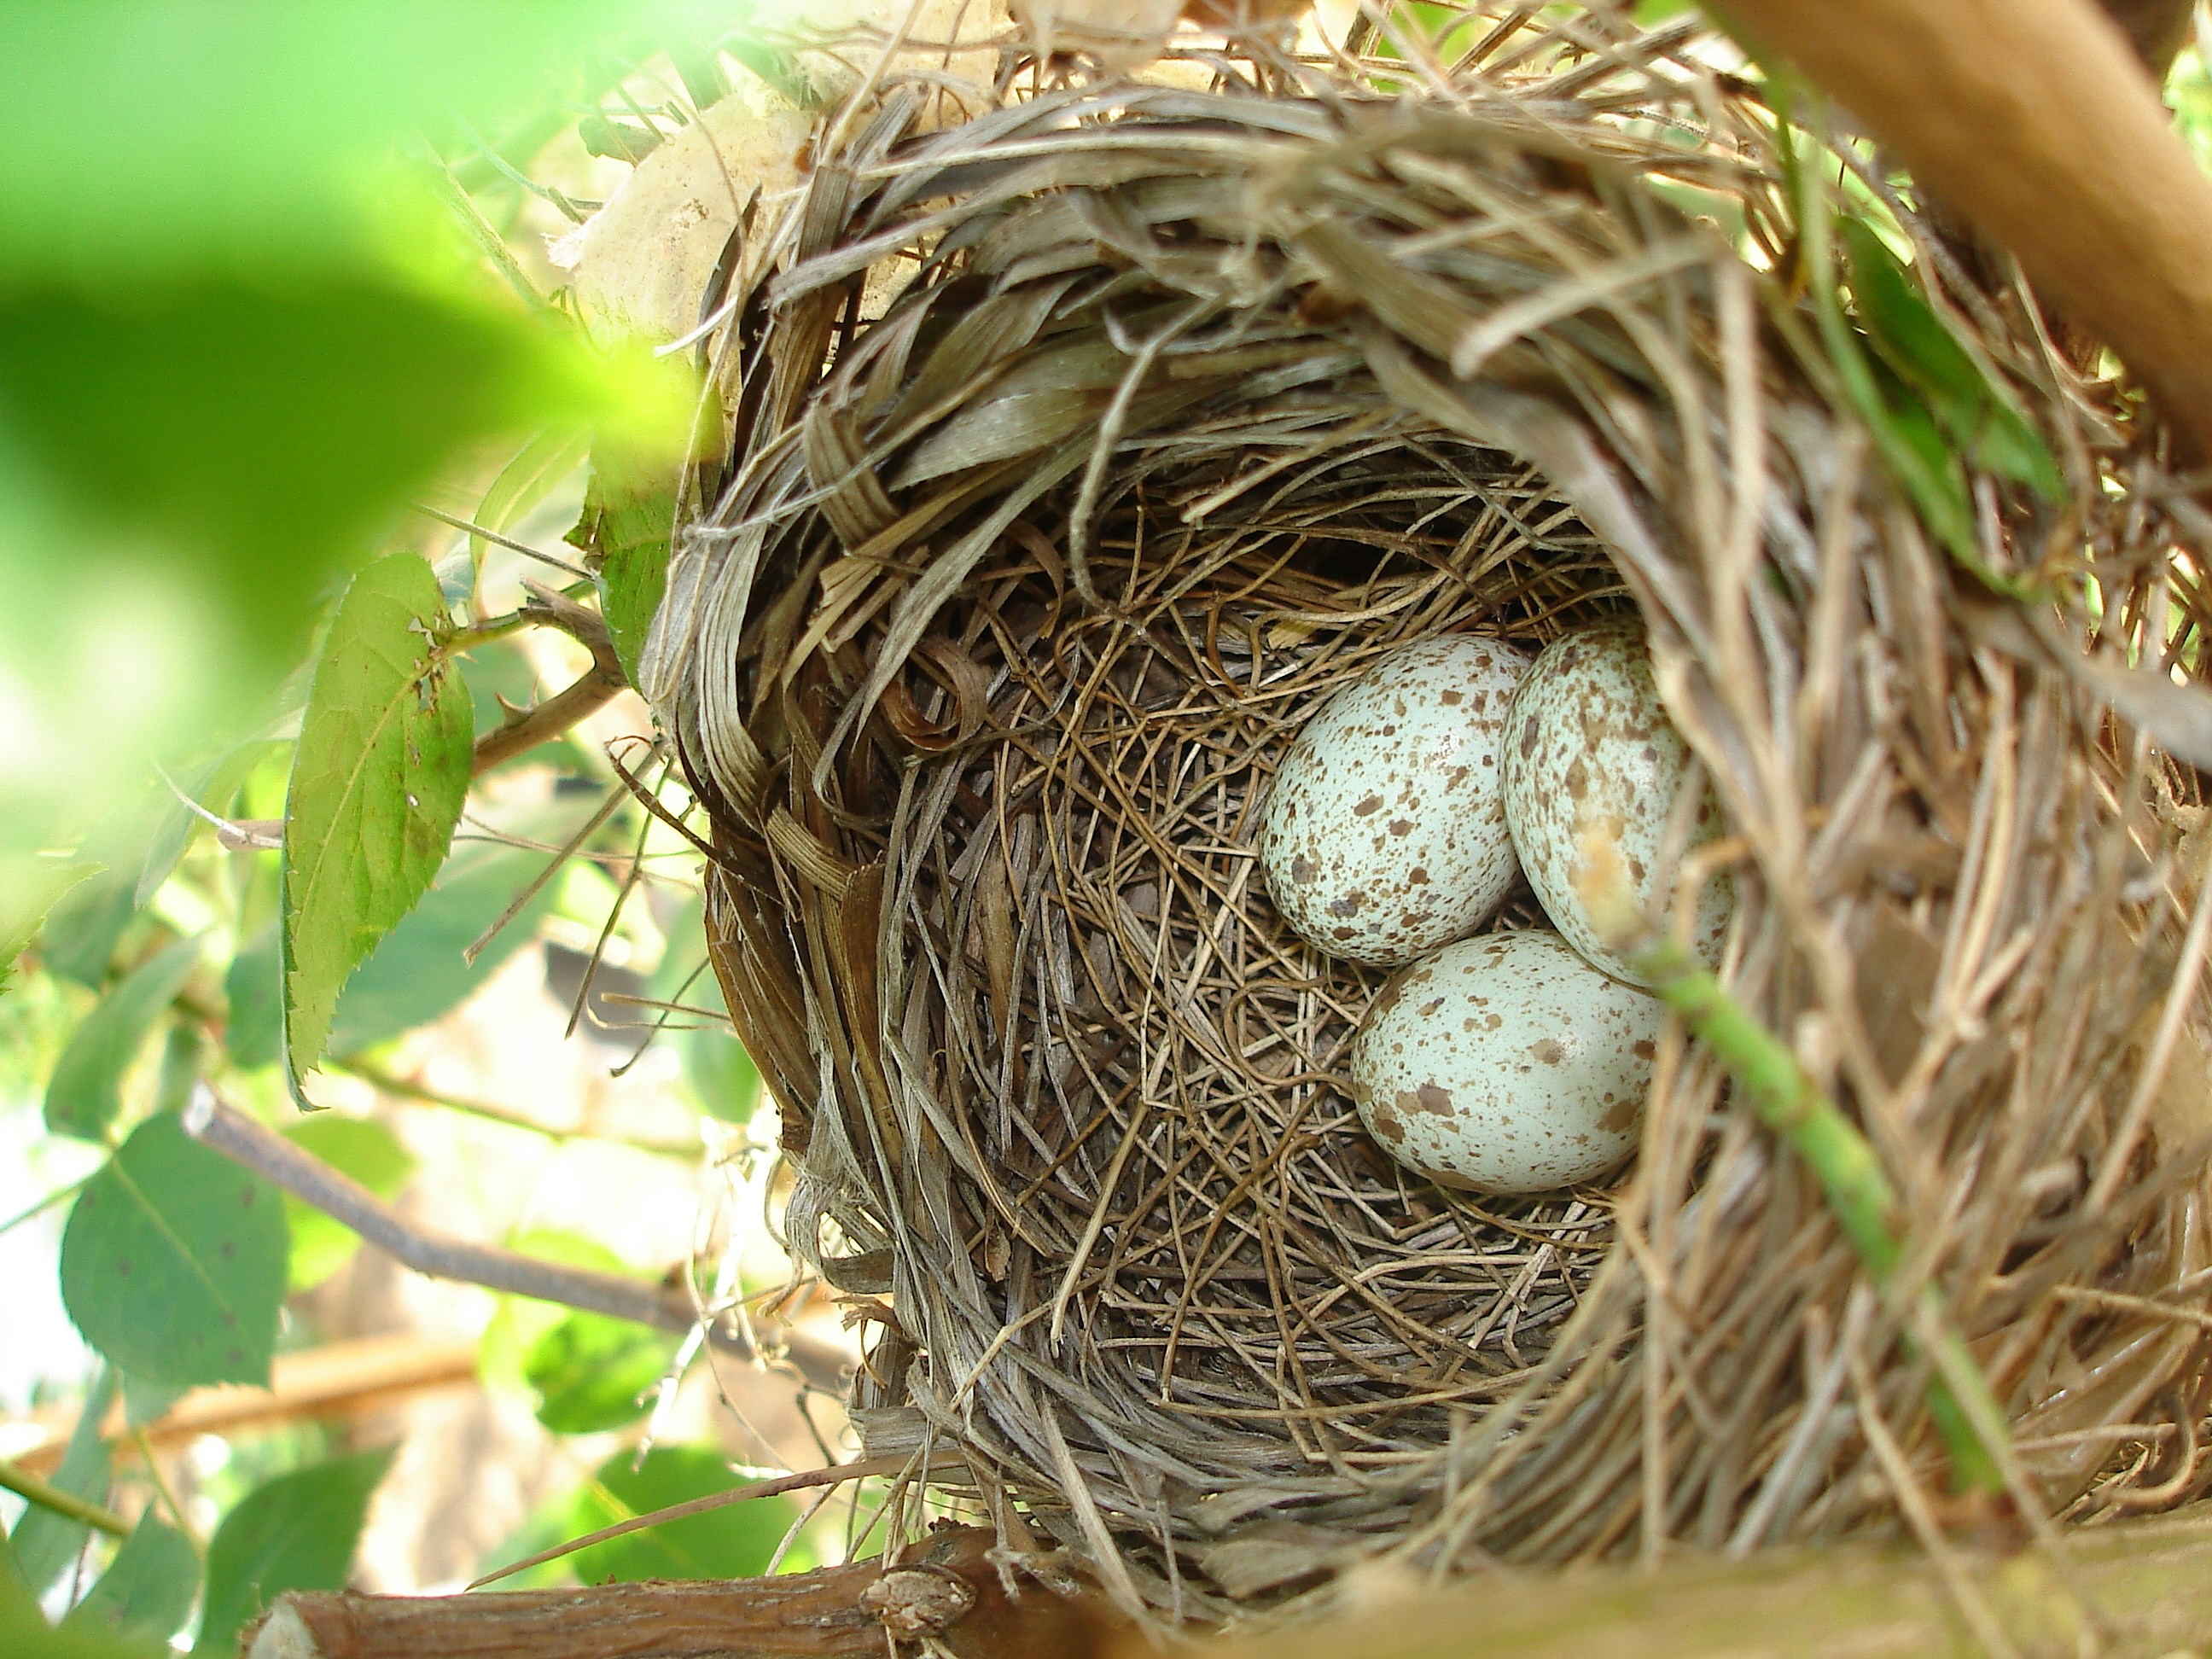 Their nests. Птичье гнездо. Гриб Птичье гнездо. Яйца птицы Кардинал. Прическа Птичье гнездо.